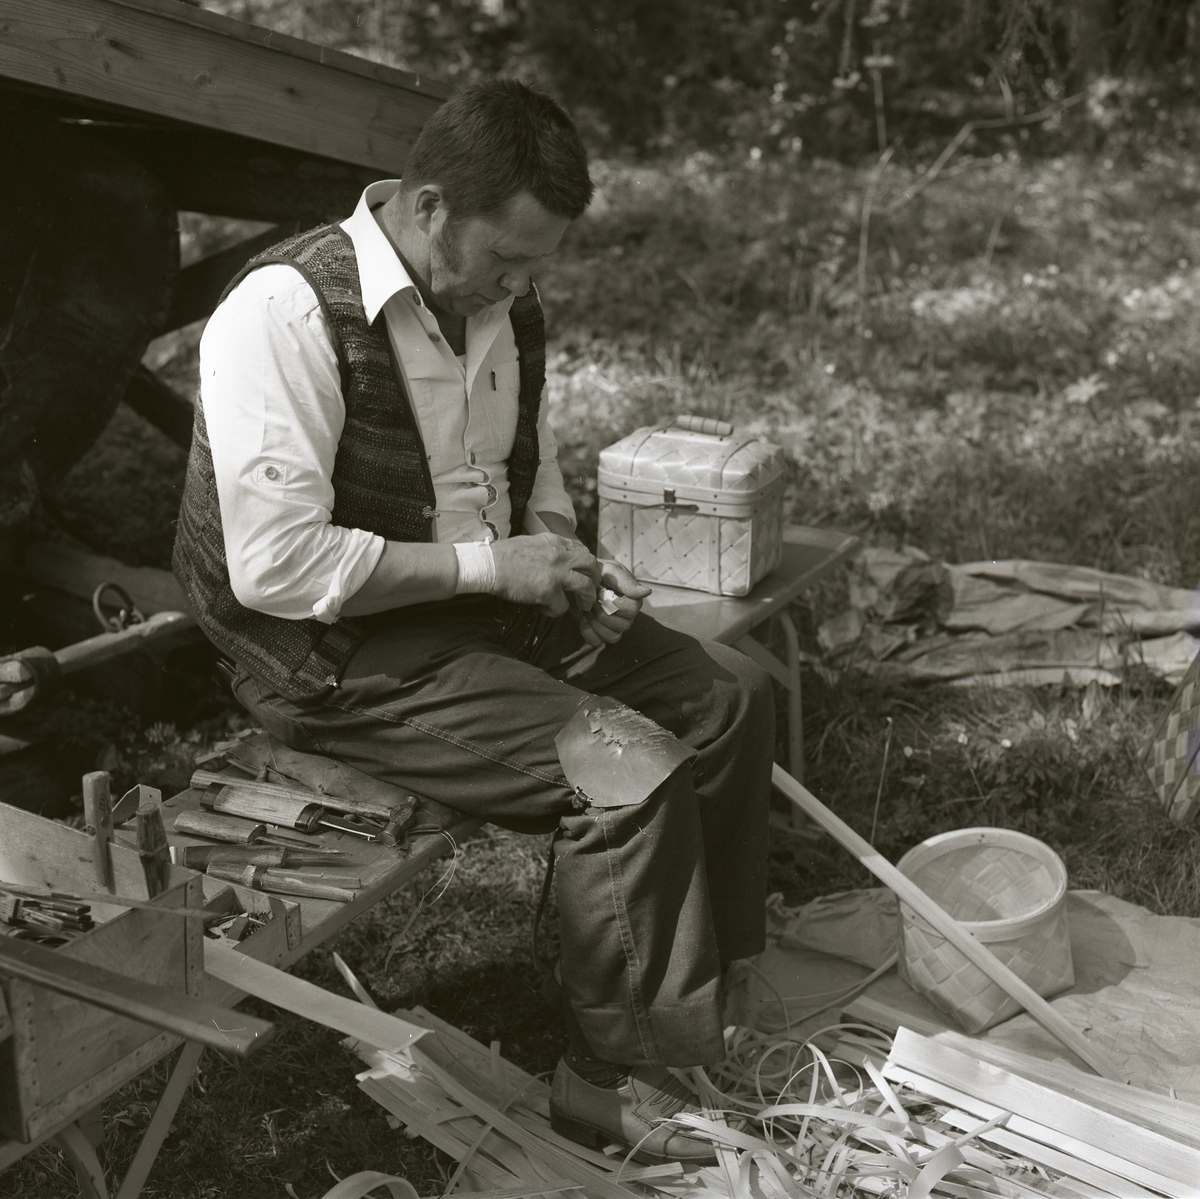 En man sitter på en bänk och tillverkar näverkorgar. Bredvid honom ligger olika redskap, verktyg och näverremsor. Mannen arbetar som korgmakare under Gammelvärldens dag vid Hembygdsbyn, 24 maj 1981.